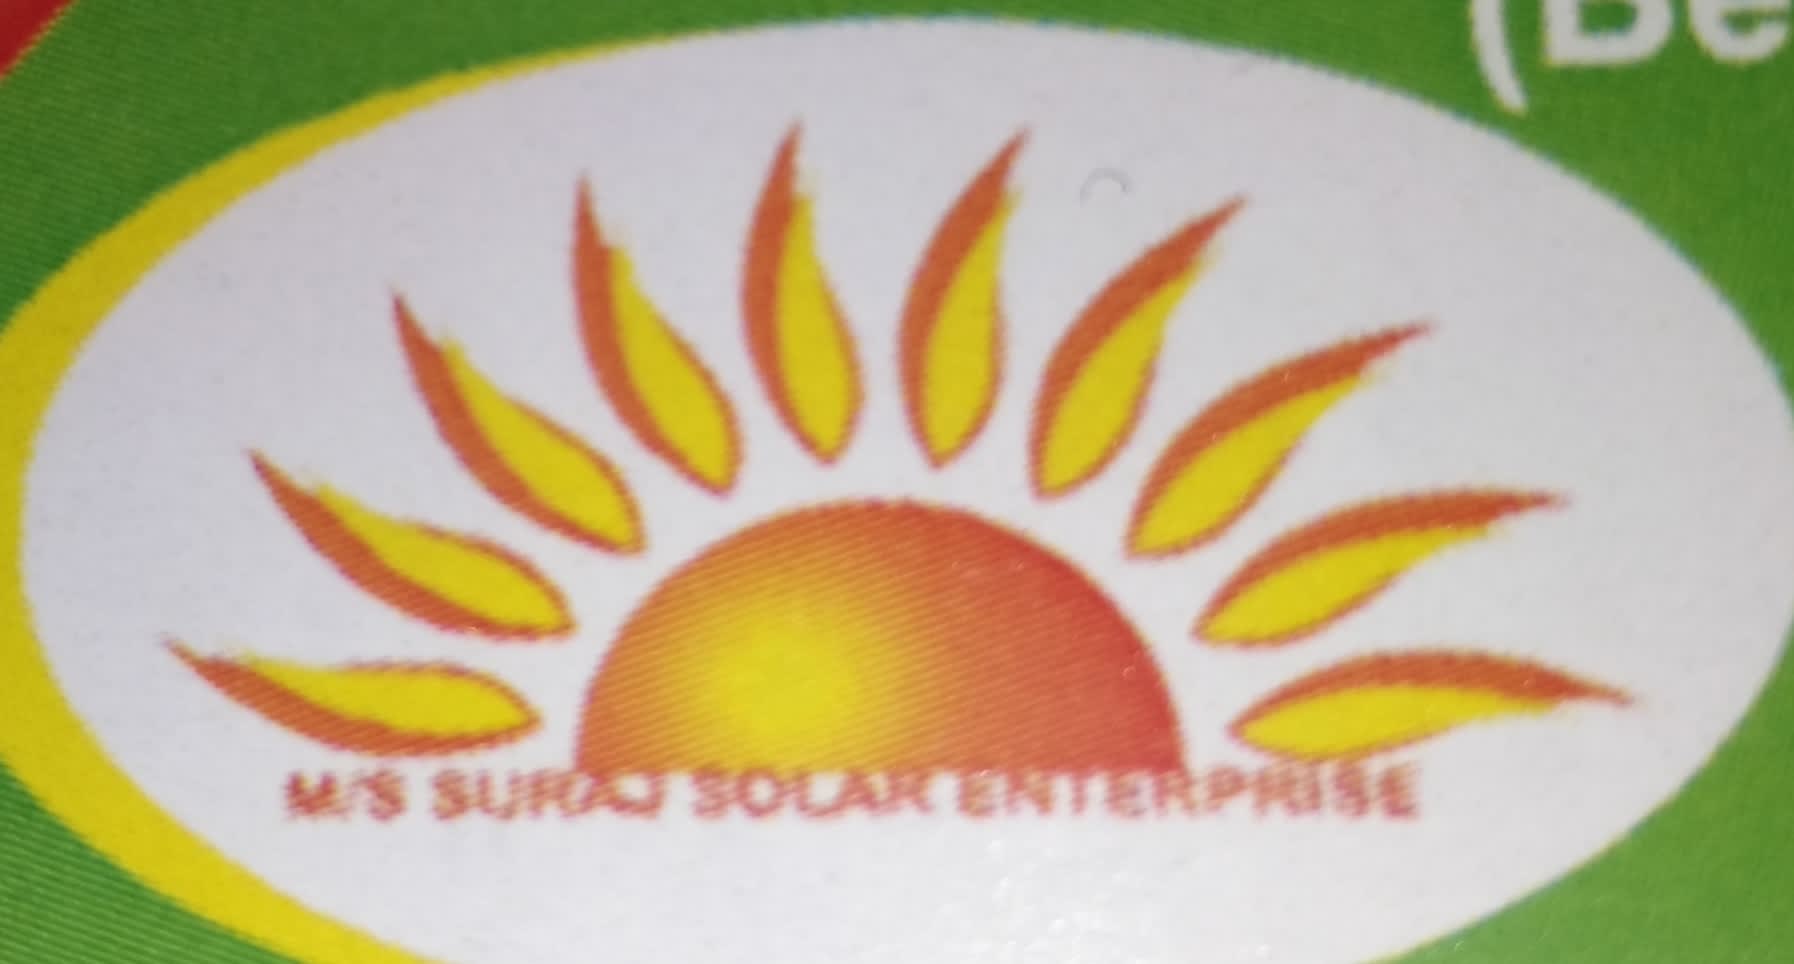 Suraj Solar Enterprise